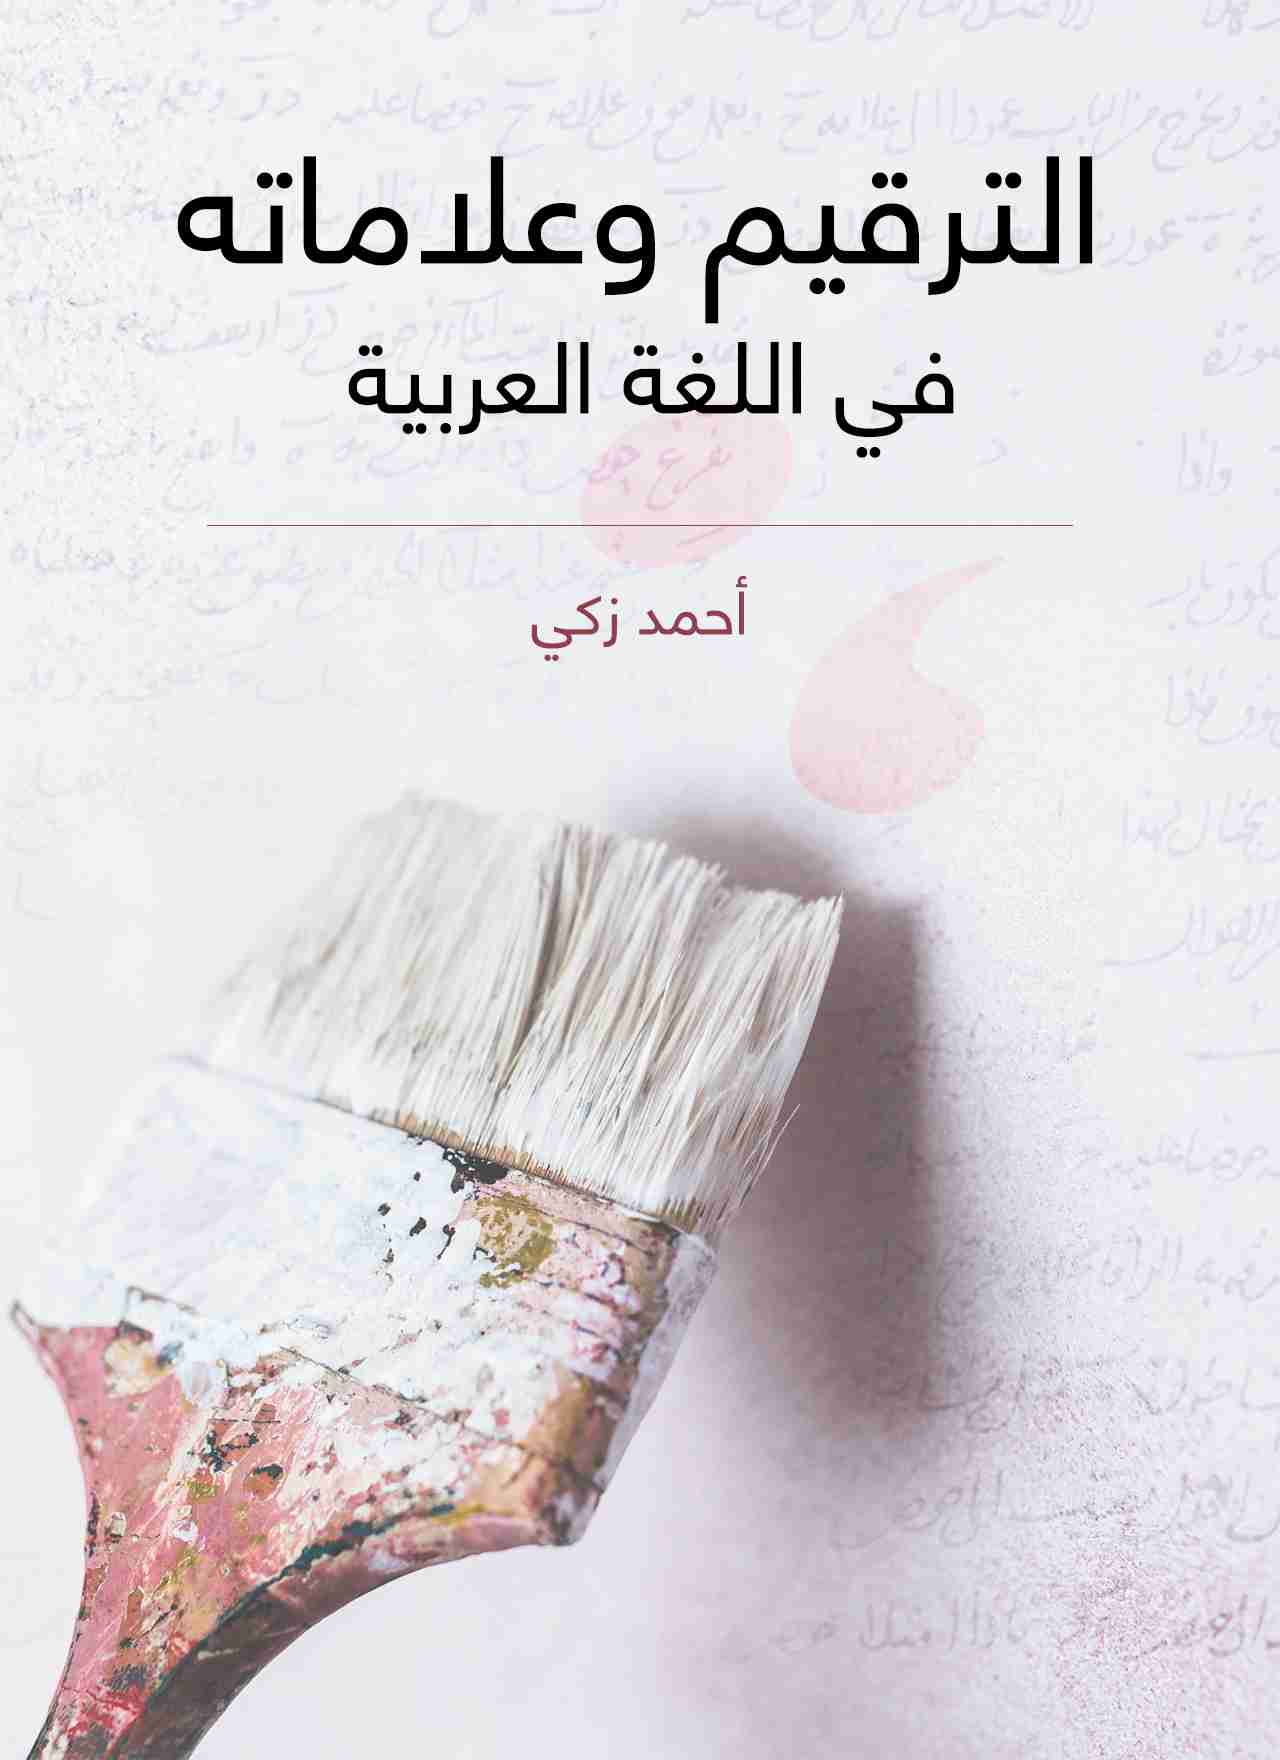 تحميل كتاب الترقيم وعلاماته في اللغة العربية pdf أحمد زكي